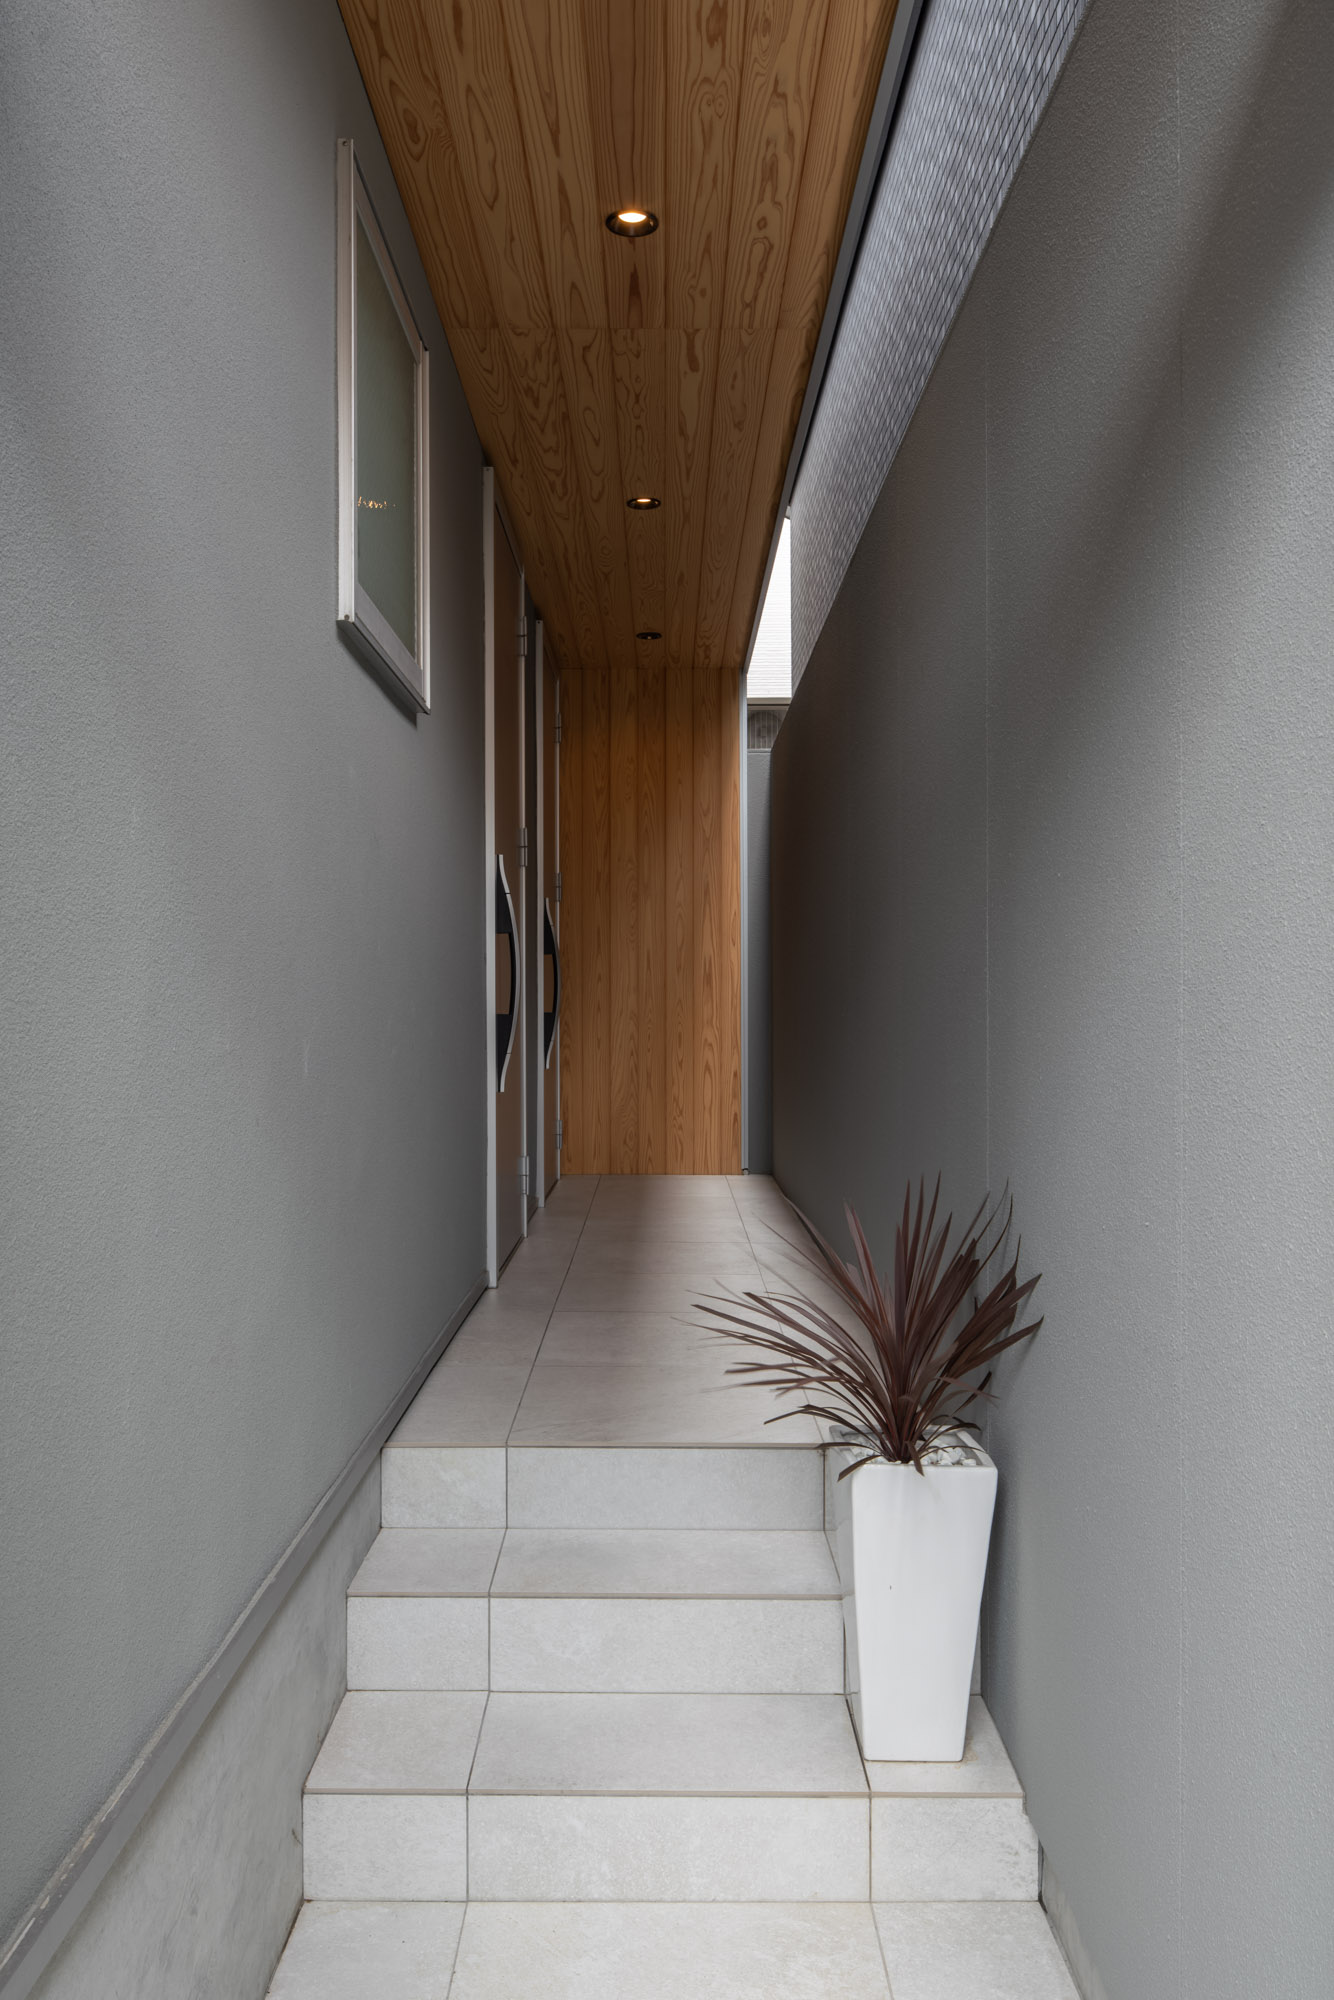 木の軒天井があり、白いタイル張りの階段を上がる玄関アプローチ・デザイン住宅